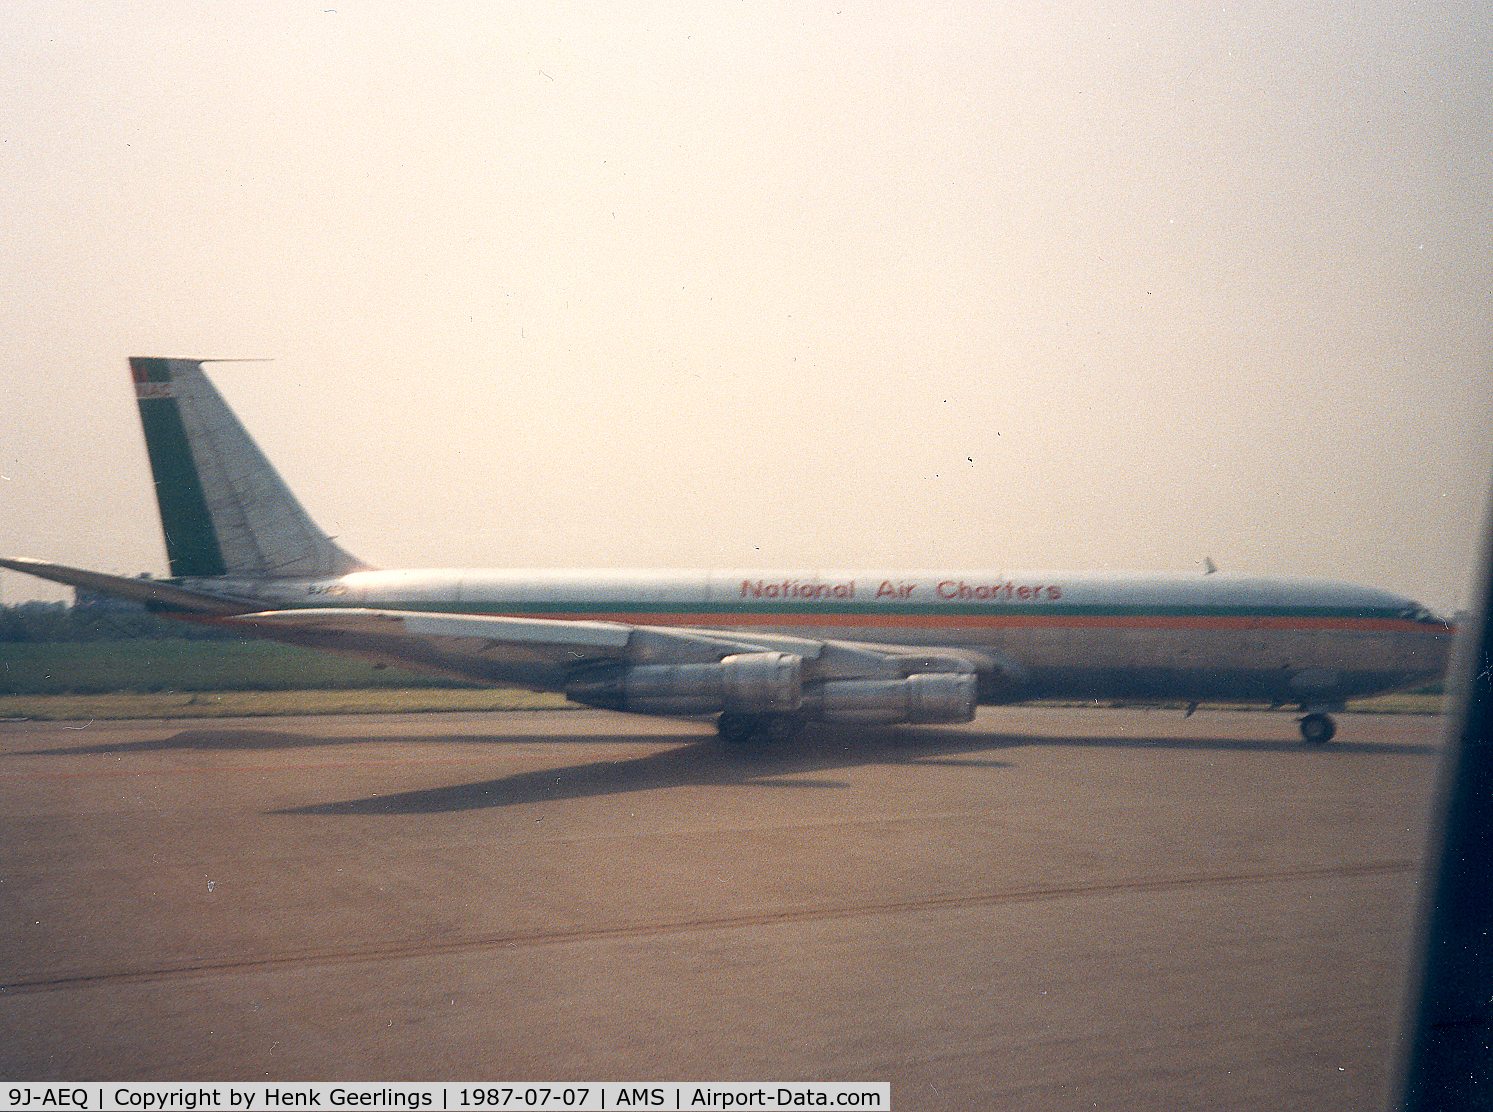 9J-AEQ, 1967 Boeing 707-321C C/N 19367, National Air Charters - Zambia